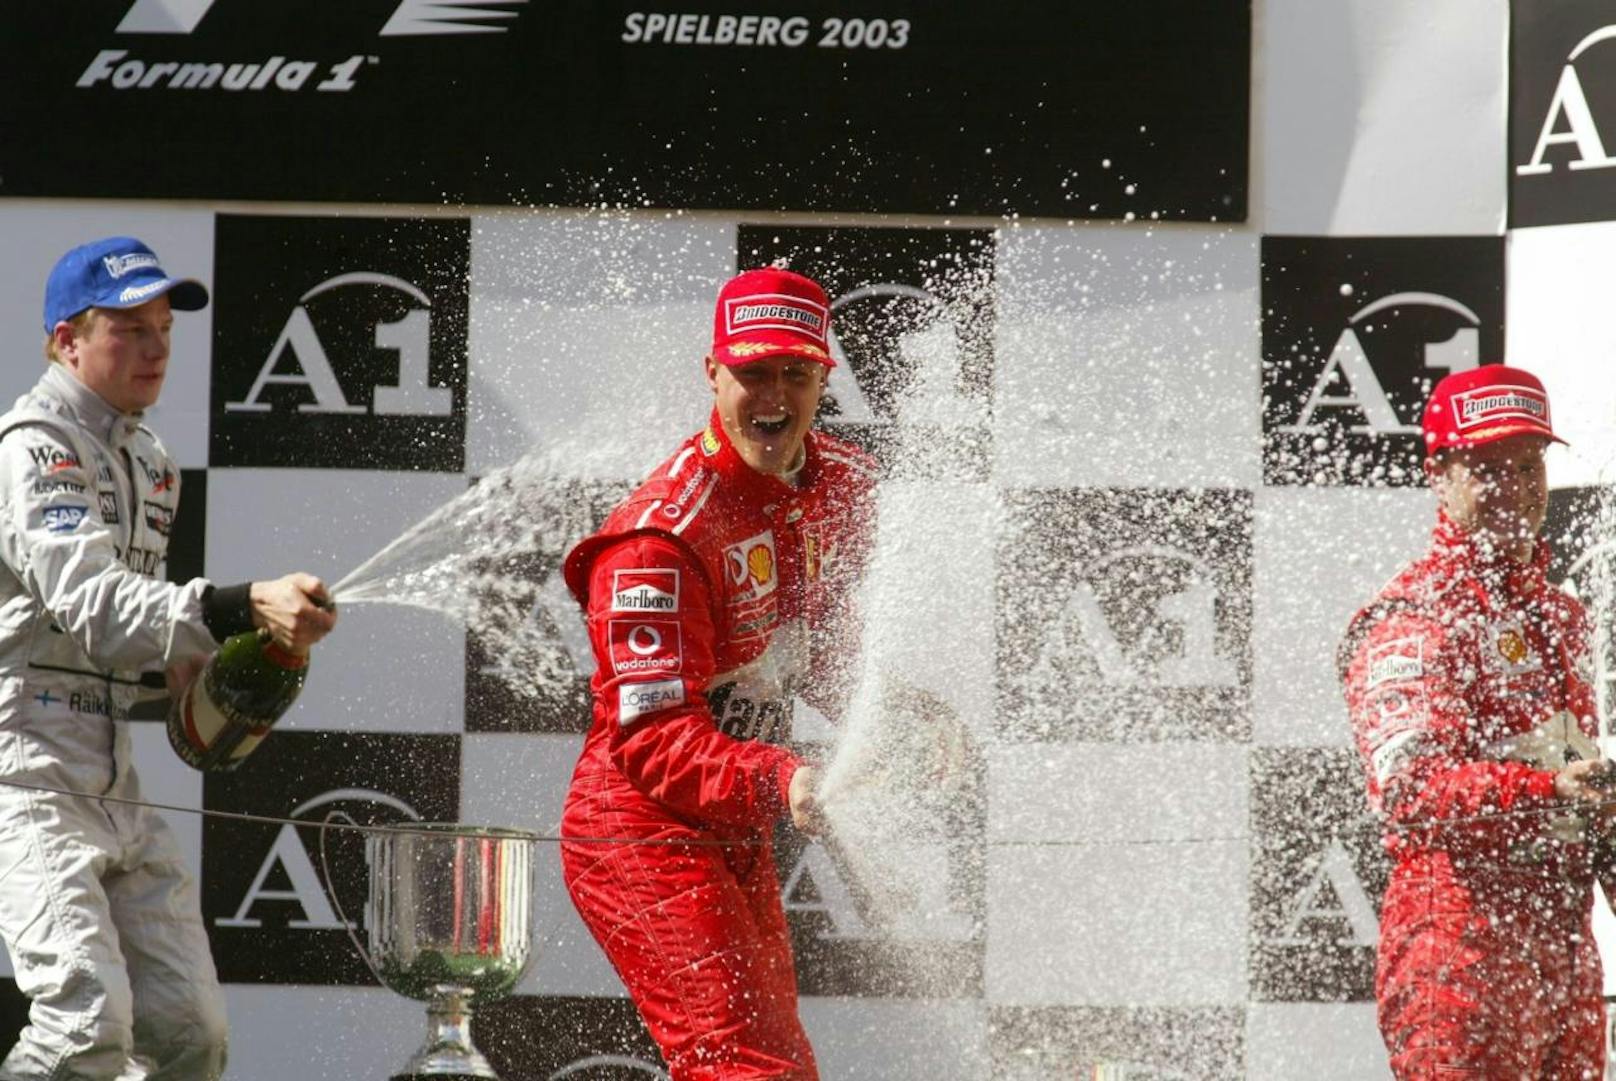 Nach nur sieben Rennen kehrte die Formel 1 Österreich wieder den Rücken. Den letzten Grand Prix 2003 sicherte sich Michael Schumacher (GER/Ferrari).